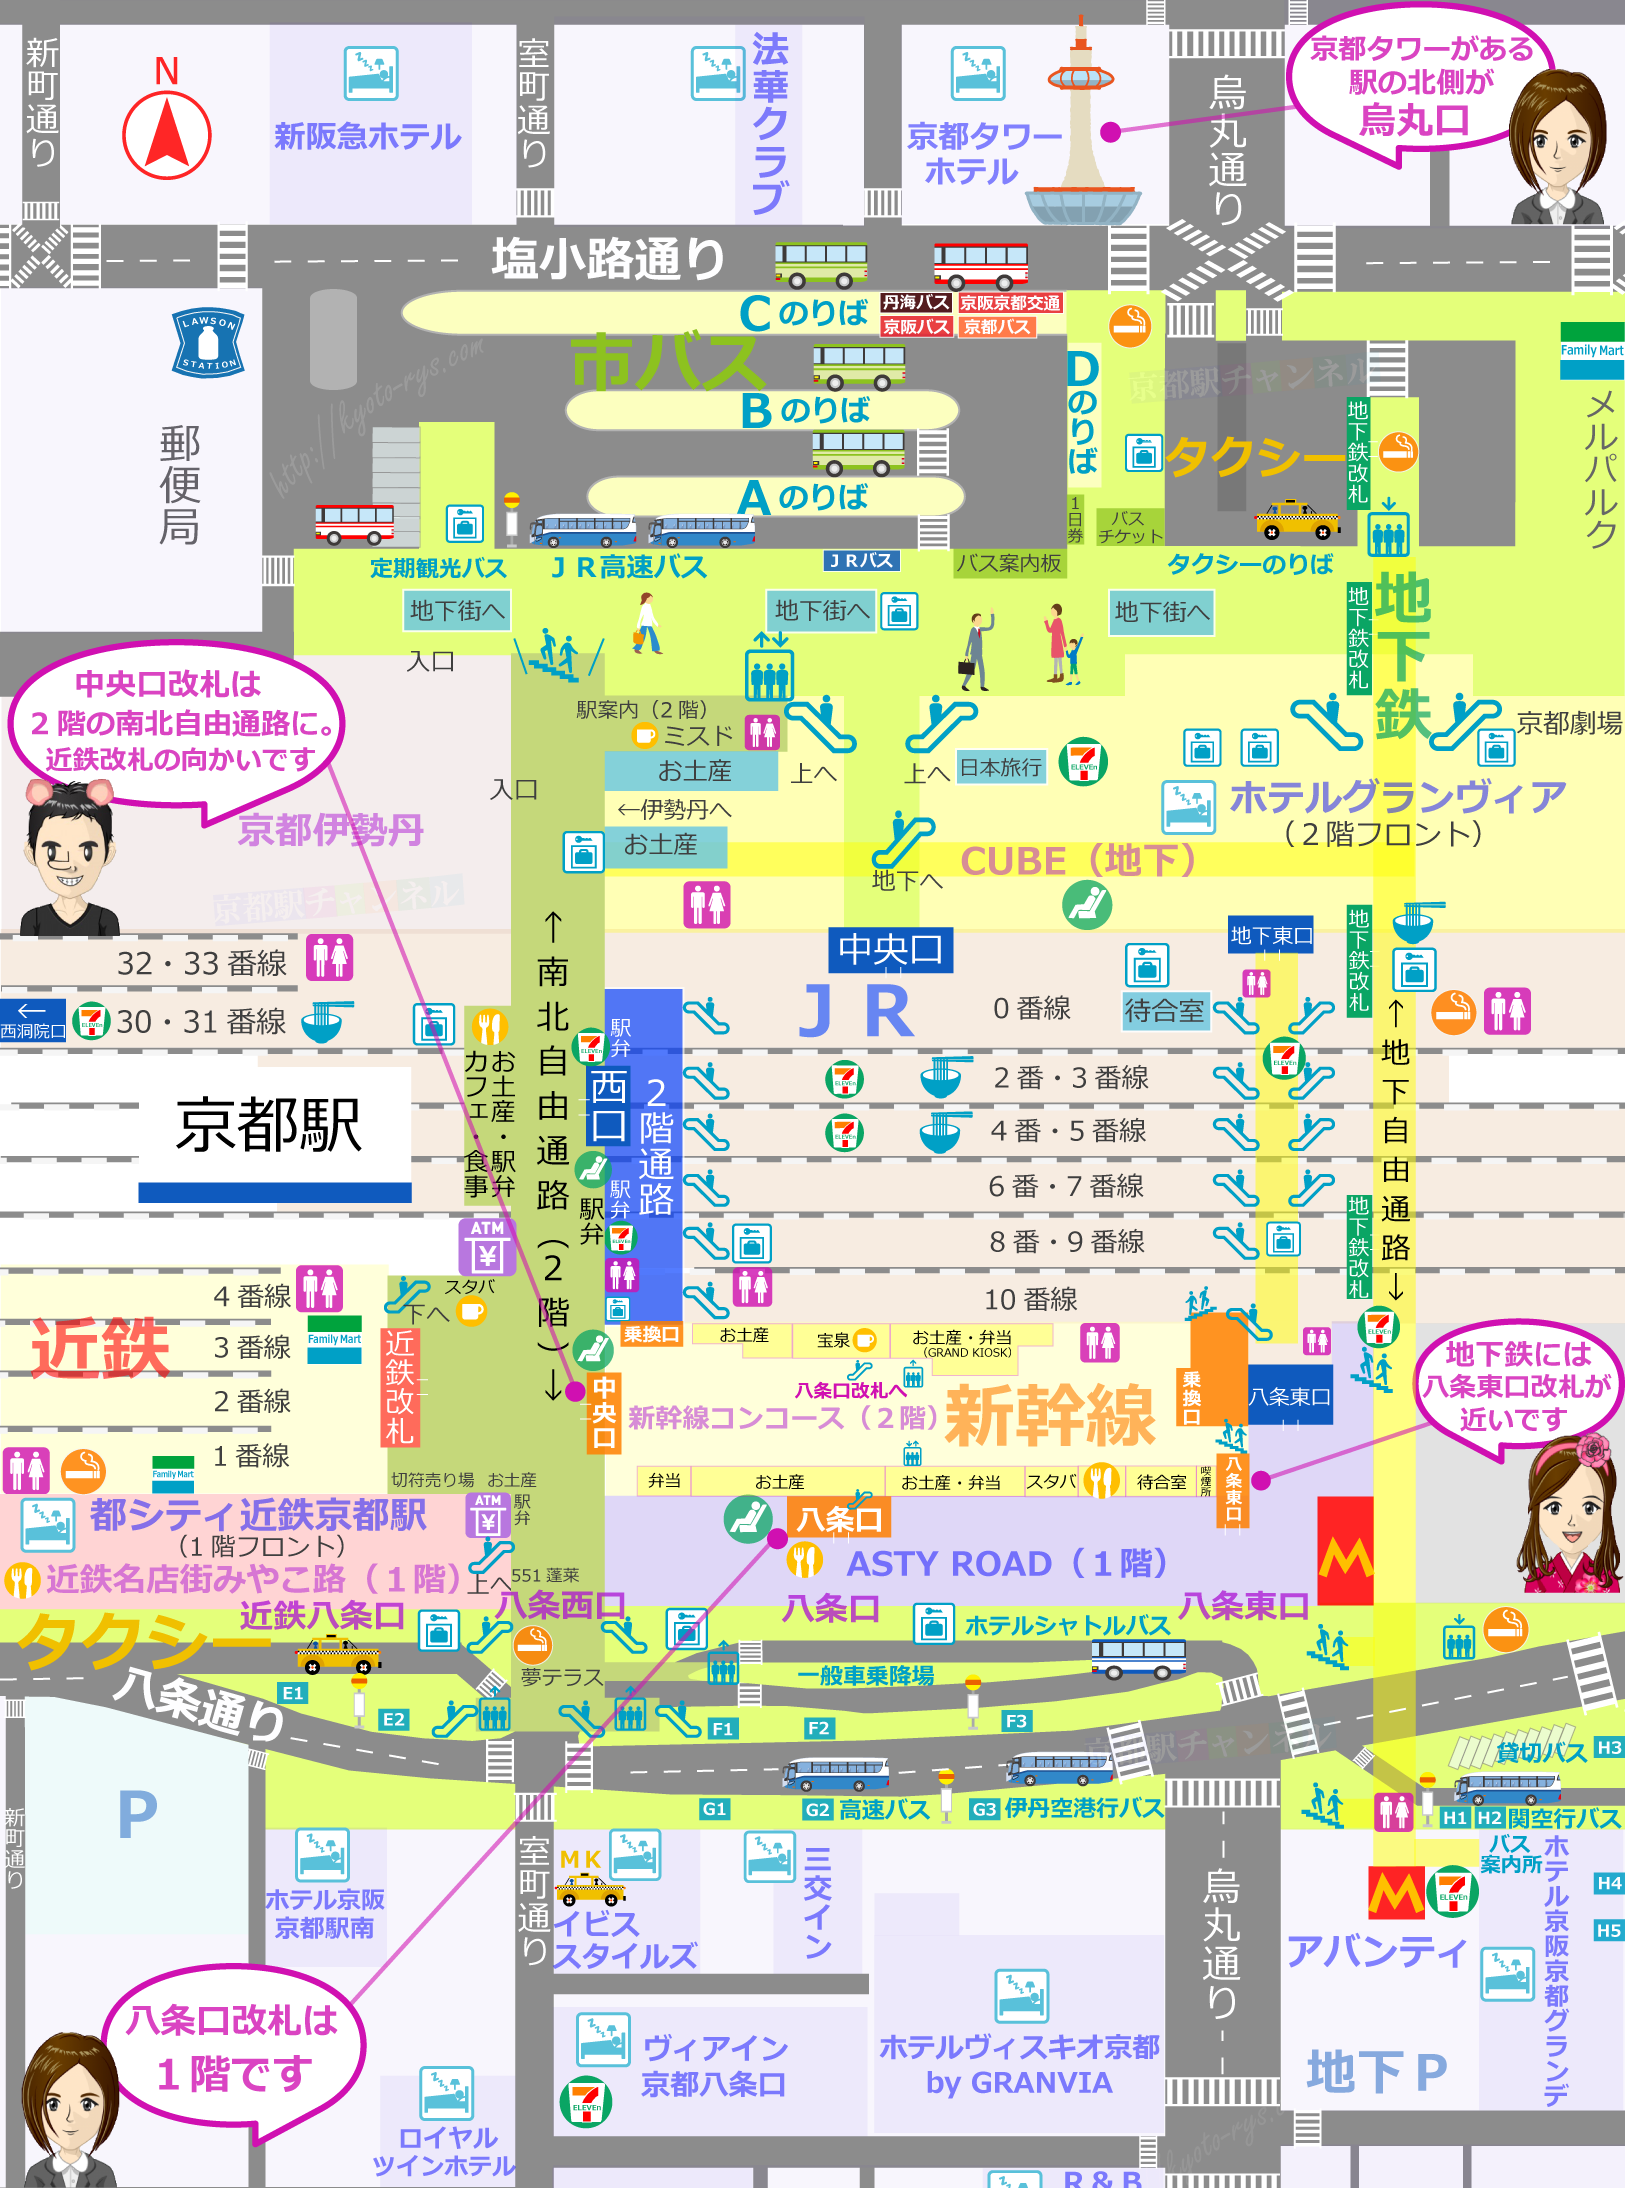 京都駅の全体マップと新幹線の改札